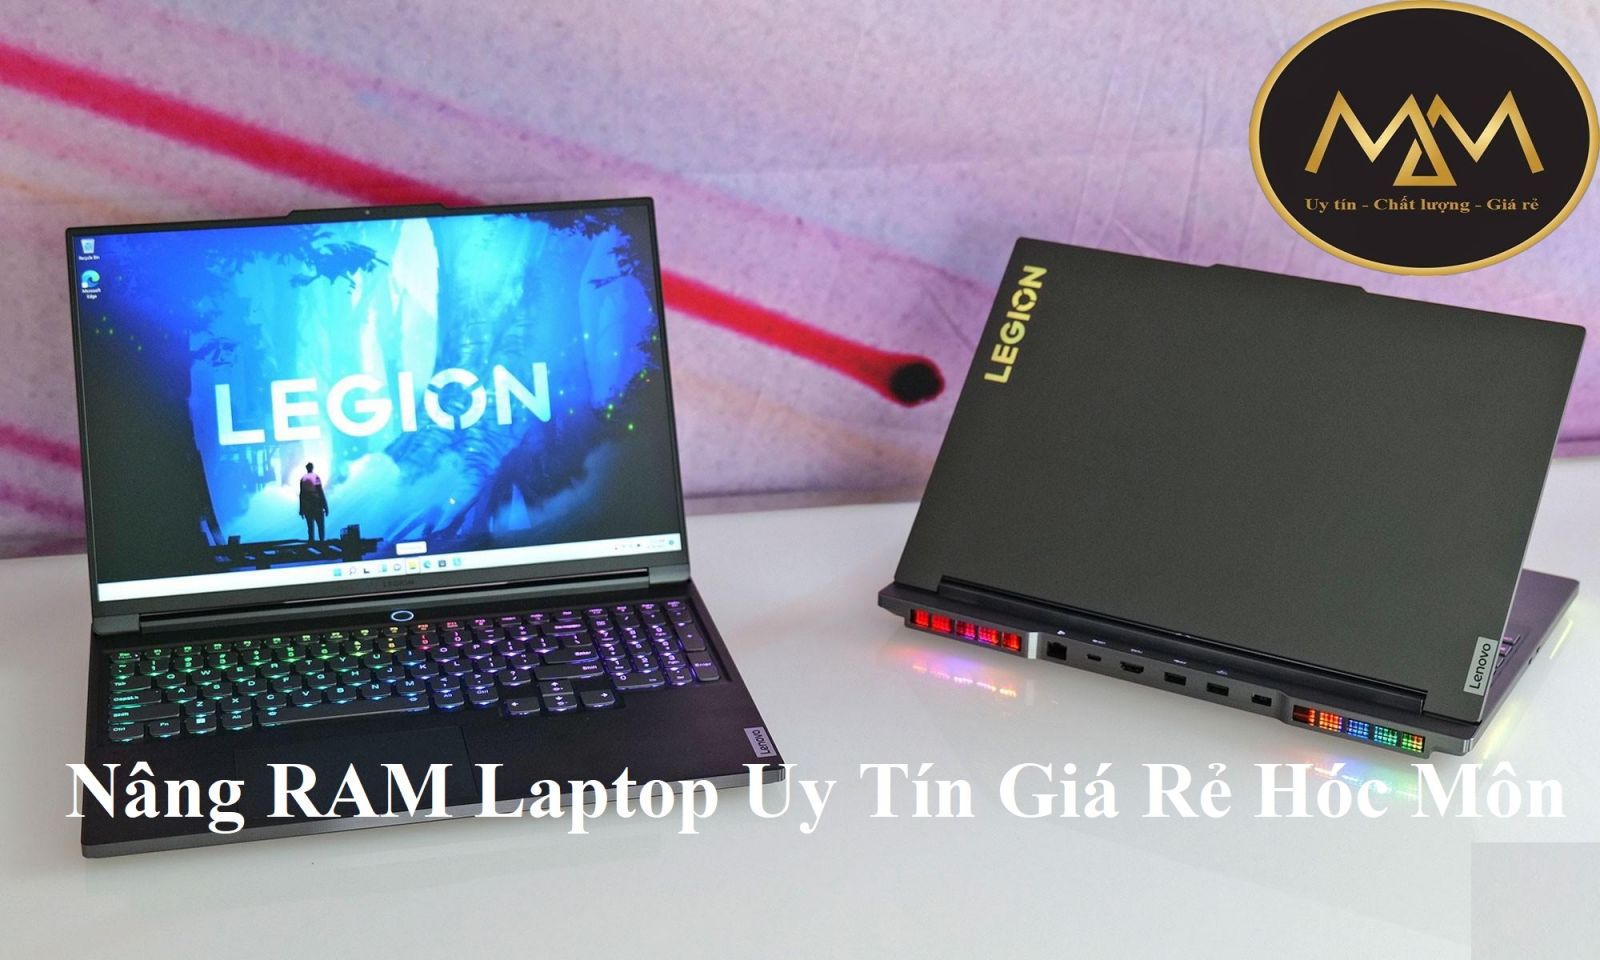 Nâng RAM Laptop Uy Tín Giá Rẻ Hóc Môn